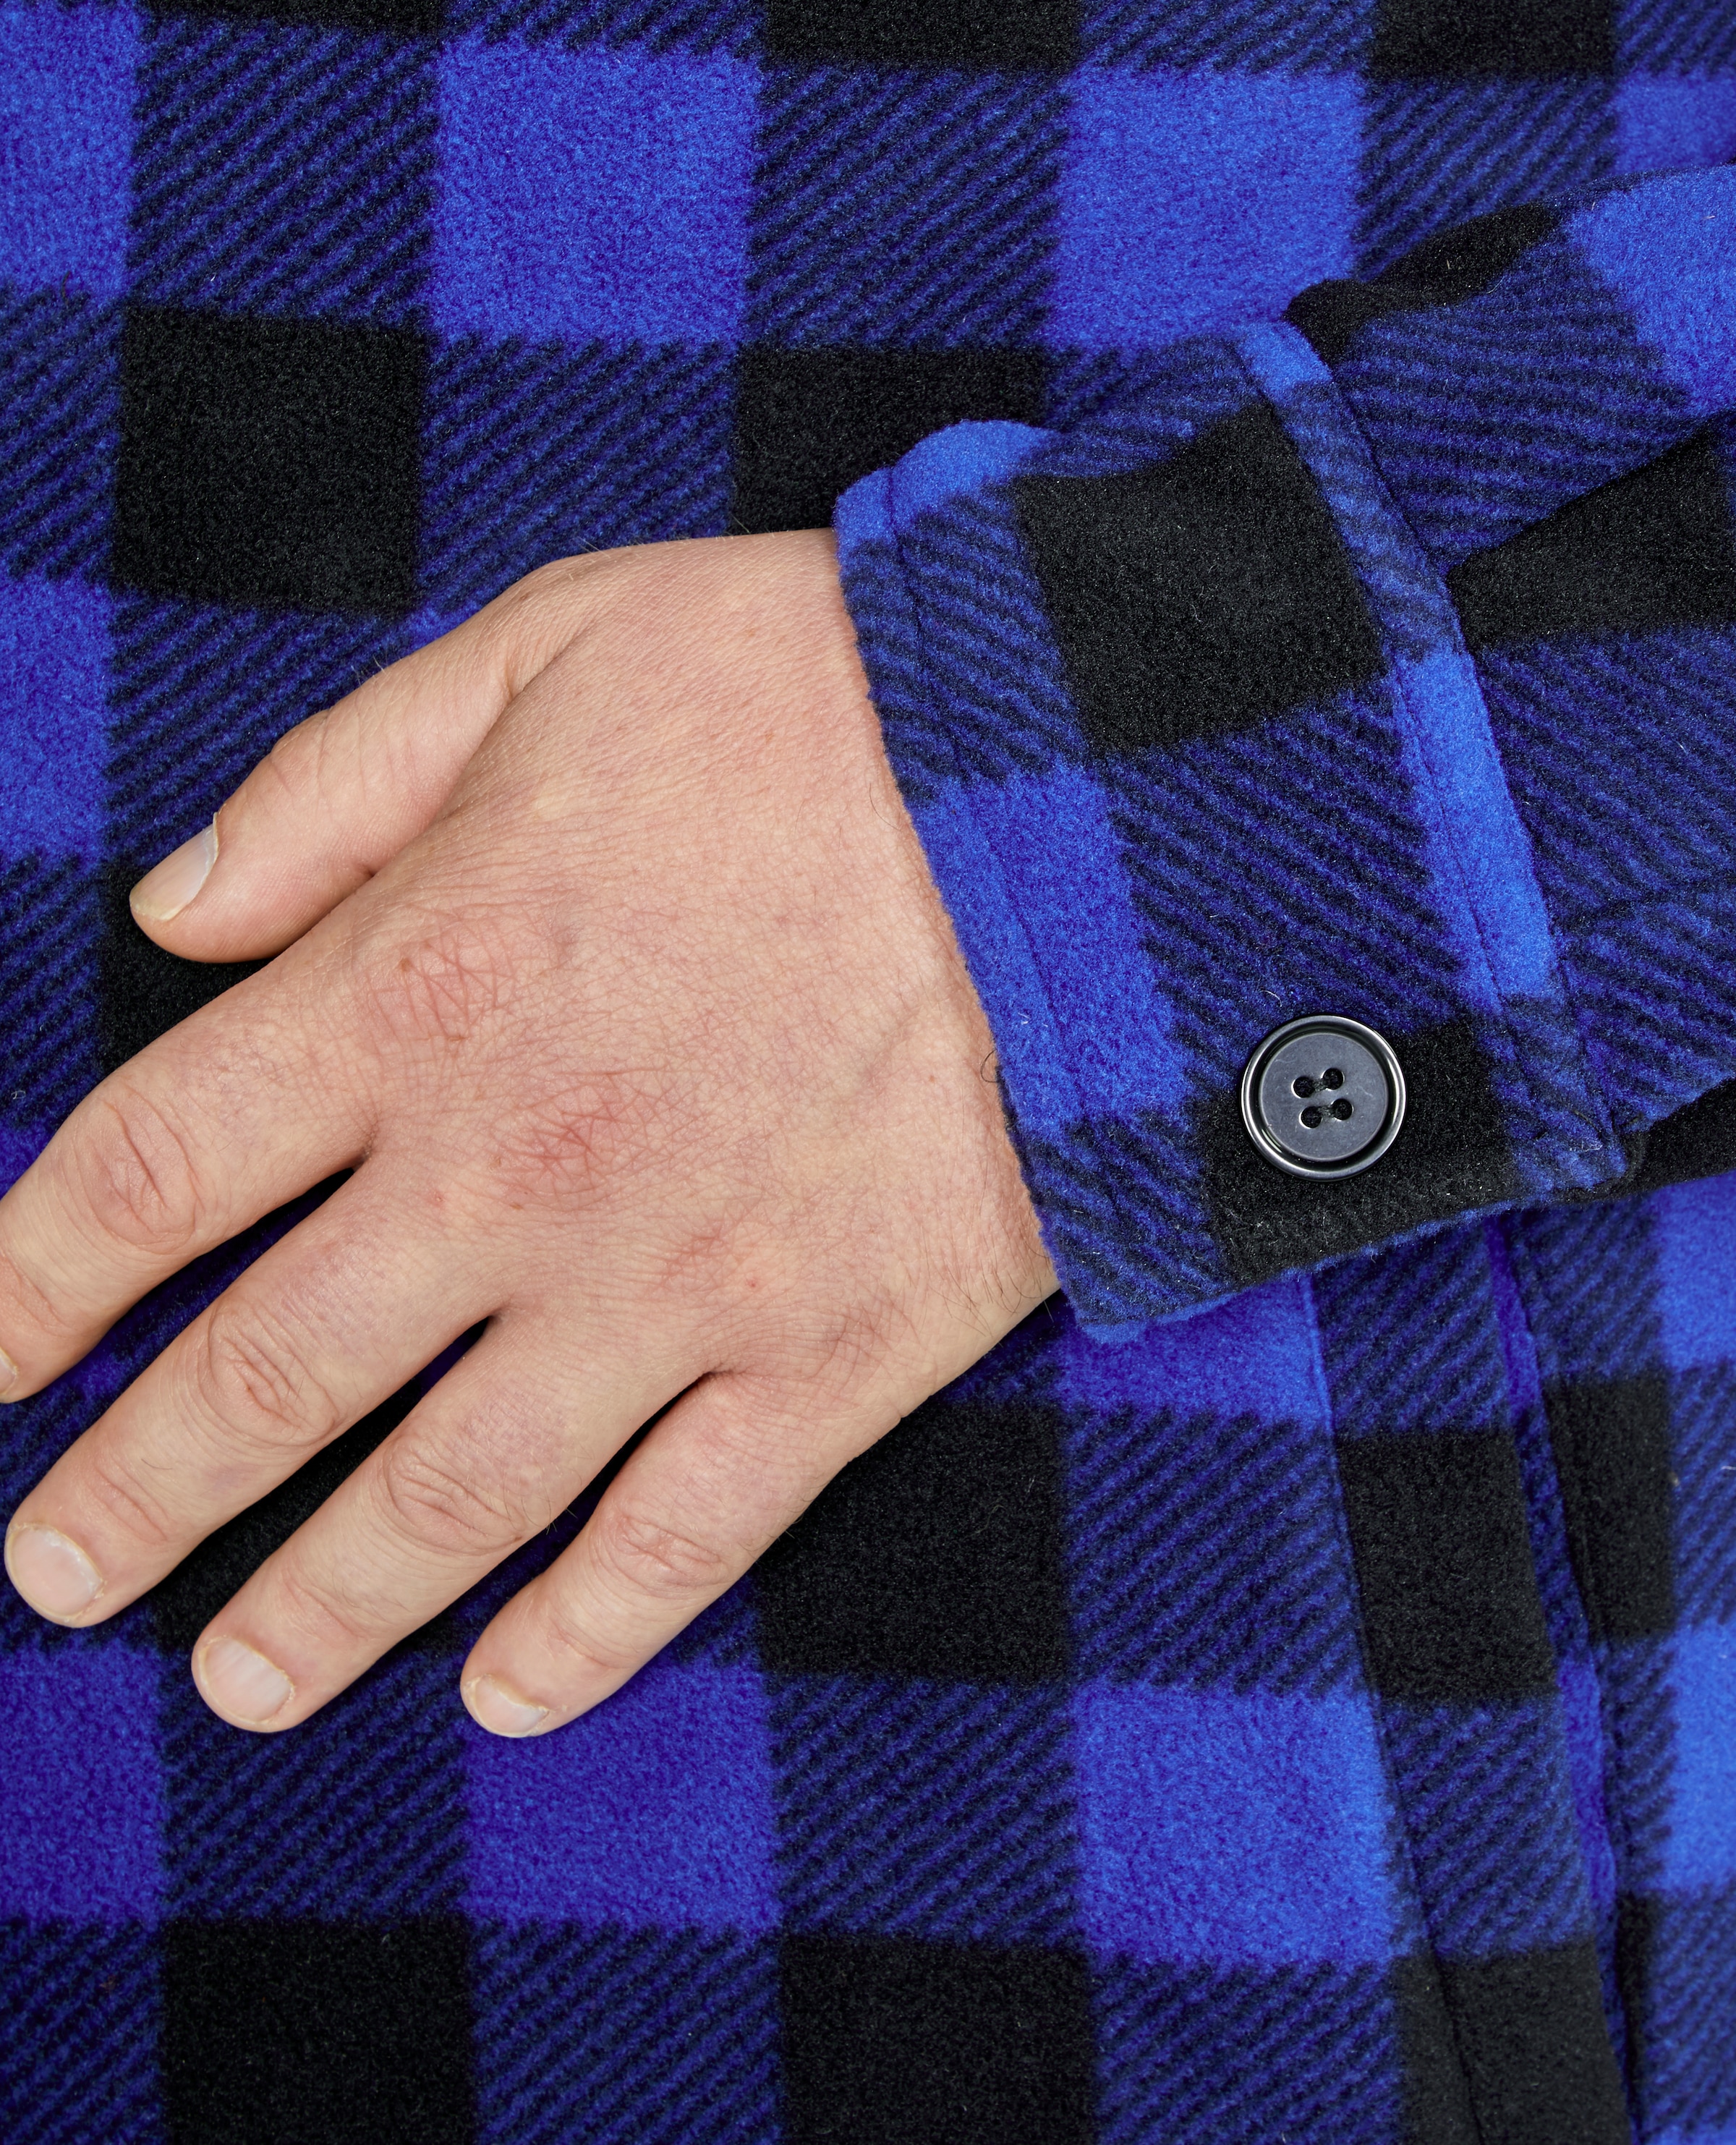 Northern Country Flanellhemd, (als Jacke offen oder Hemd zugeknöpft zu tragen), warm gefüttert, mit 5 Taschen, mit verlängertem Rücken, Flanellstoff